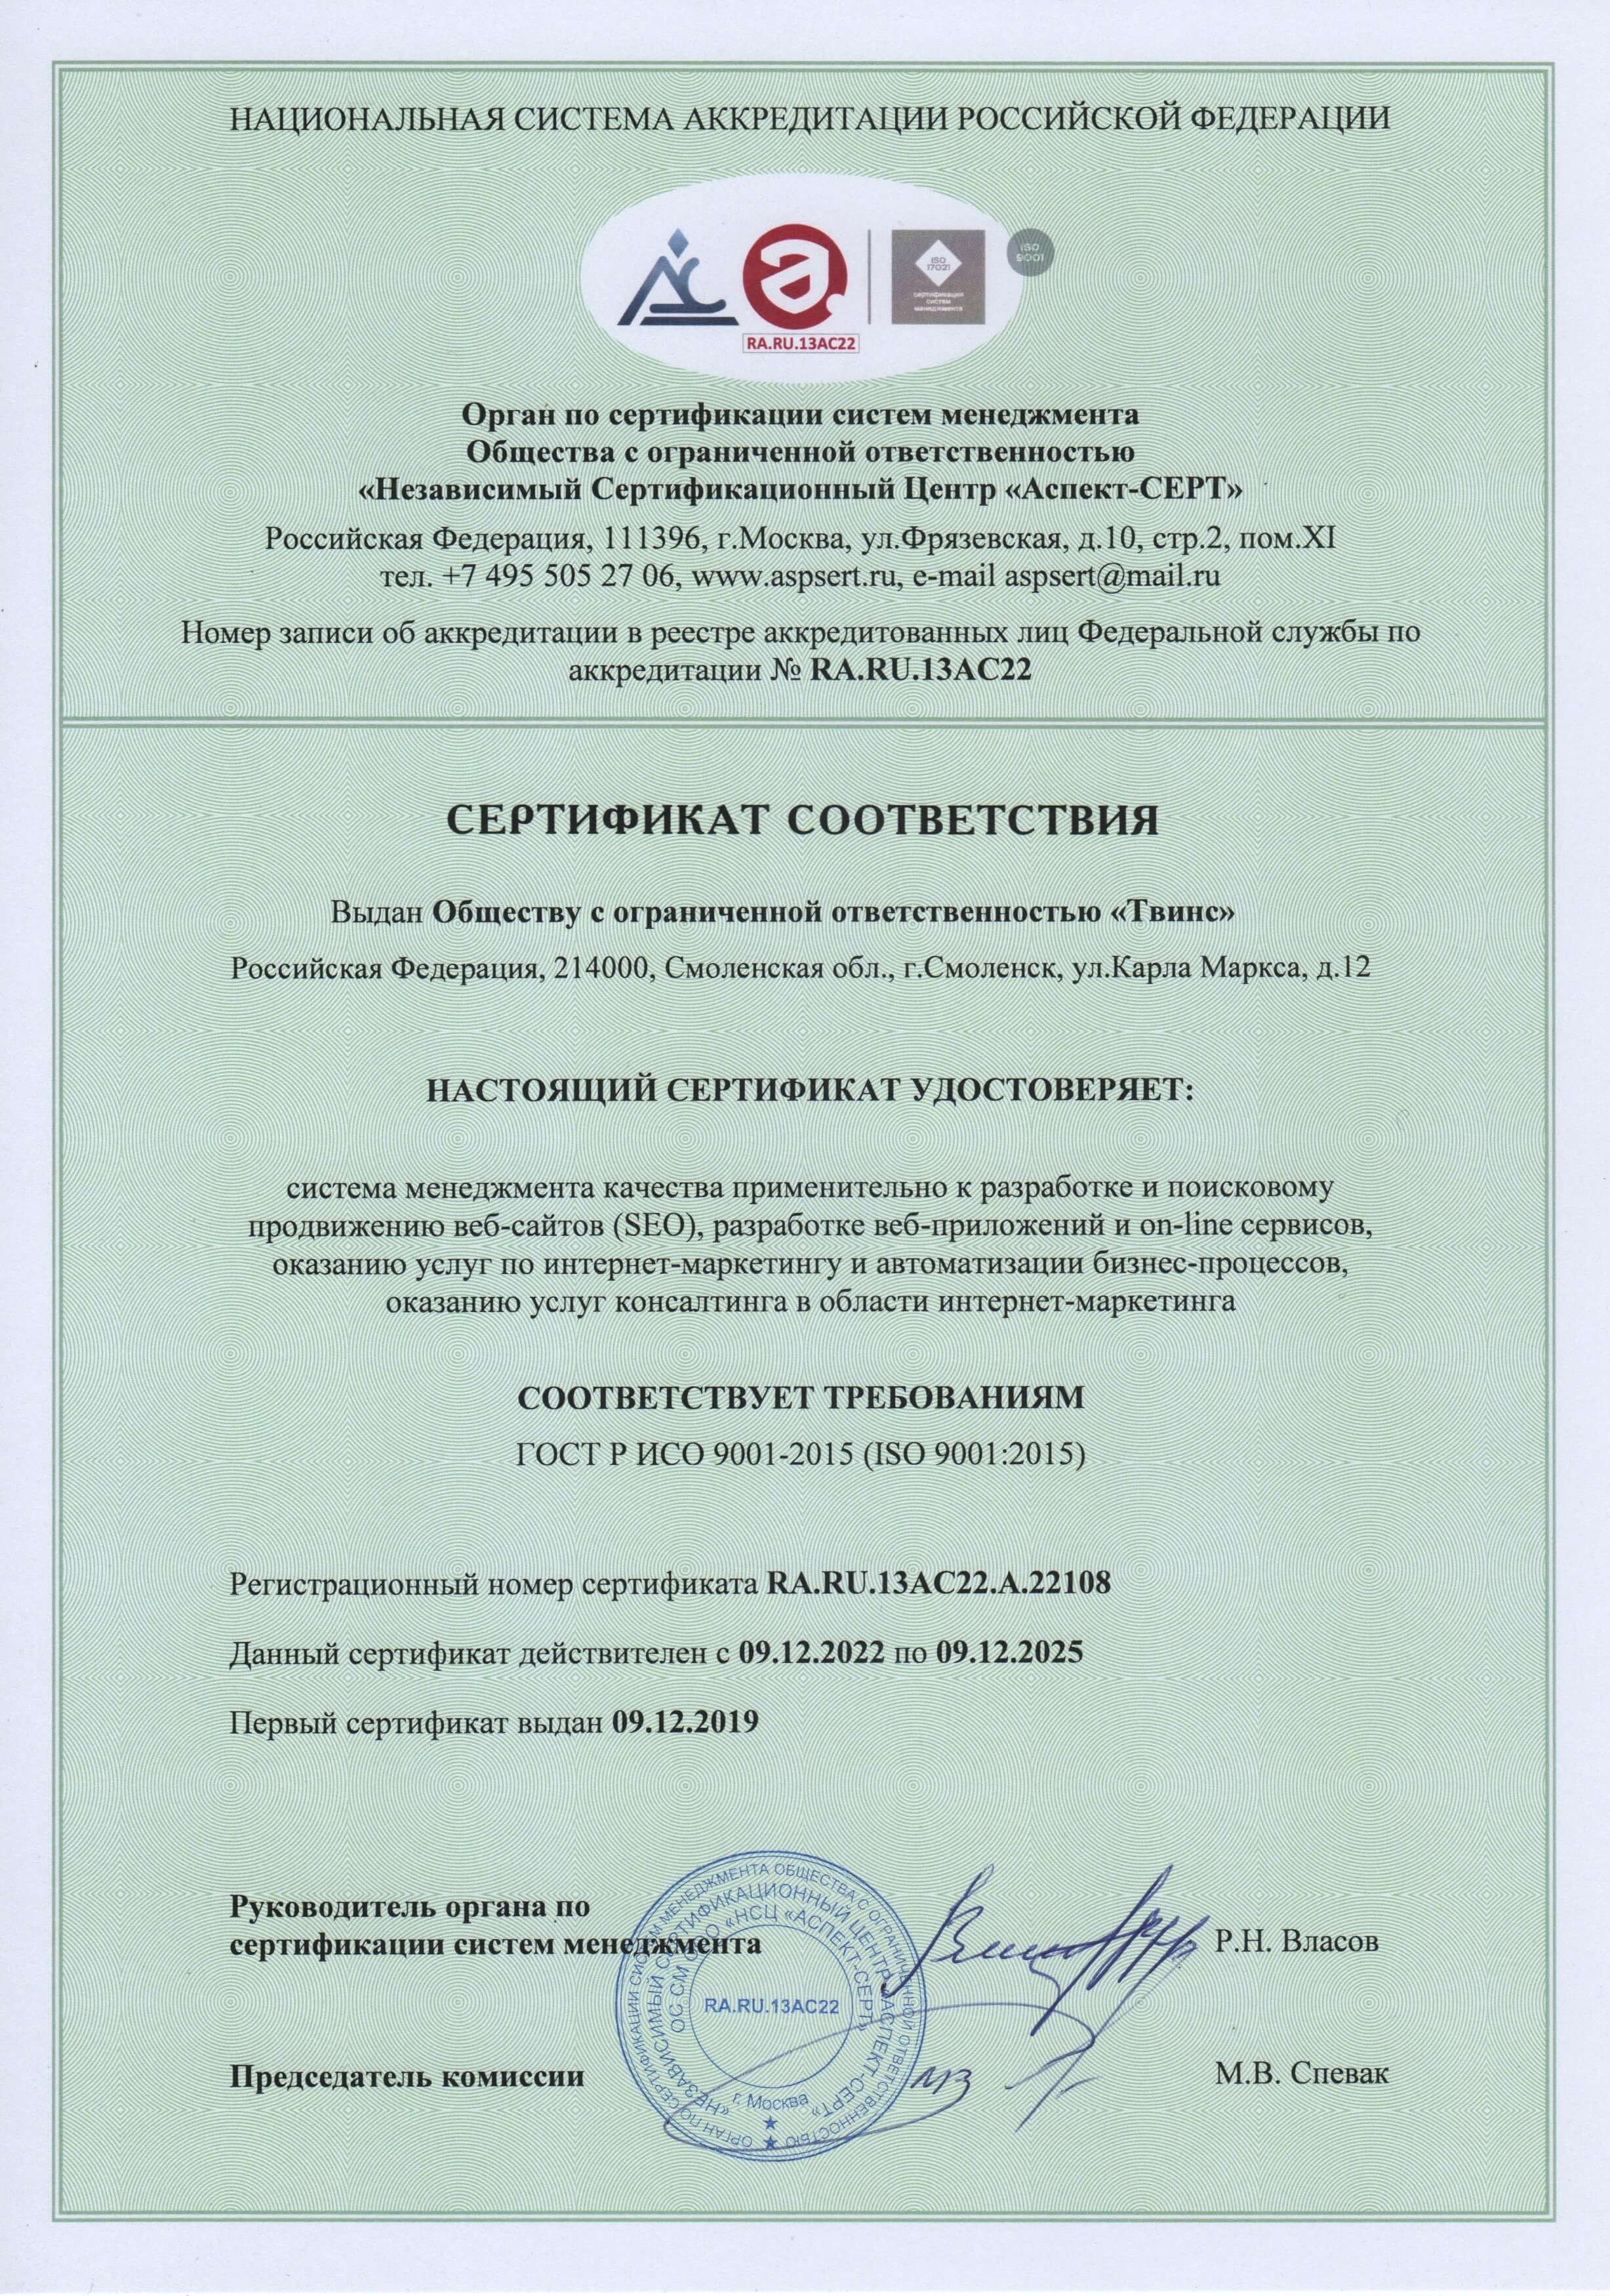 Сертификат ГОСТ Р ИСО у диджитал-агентства WebCanape